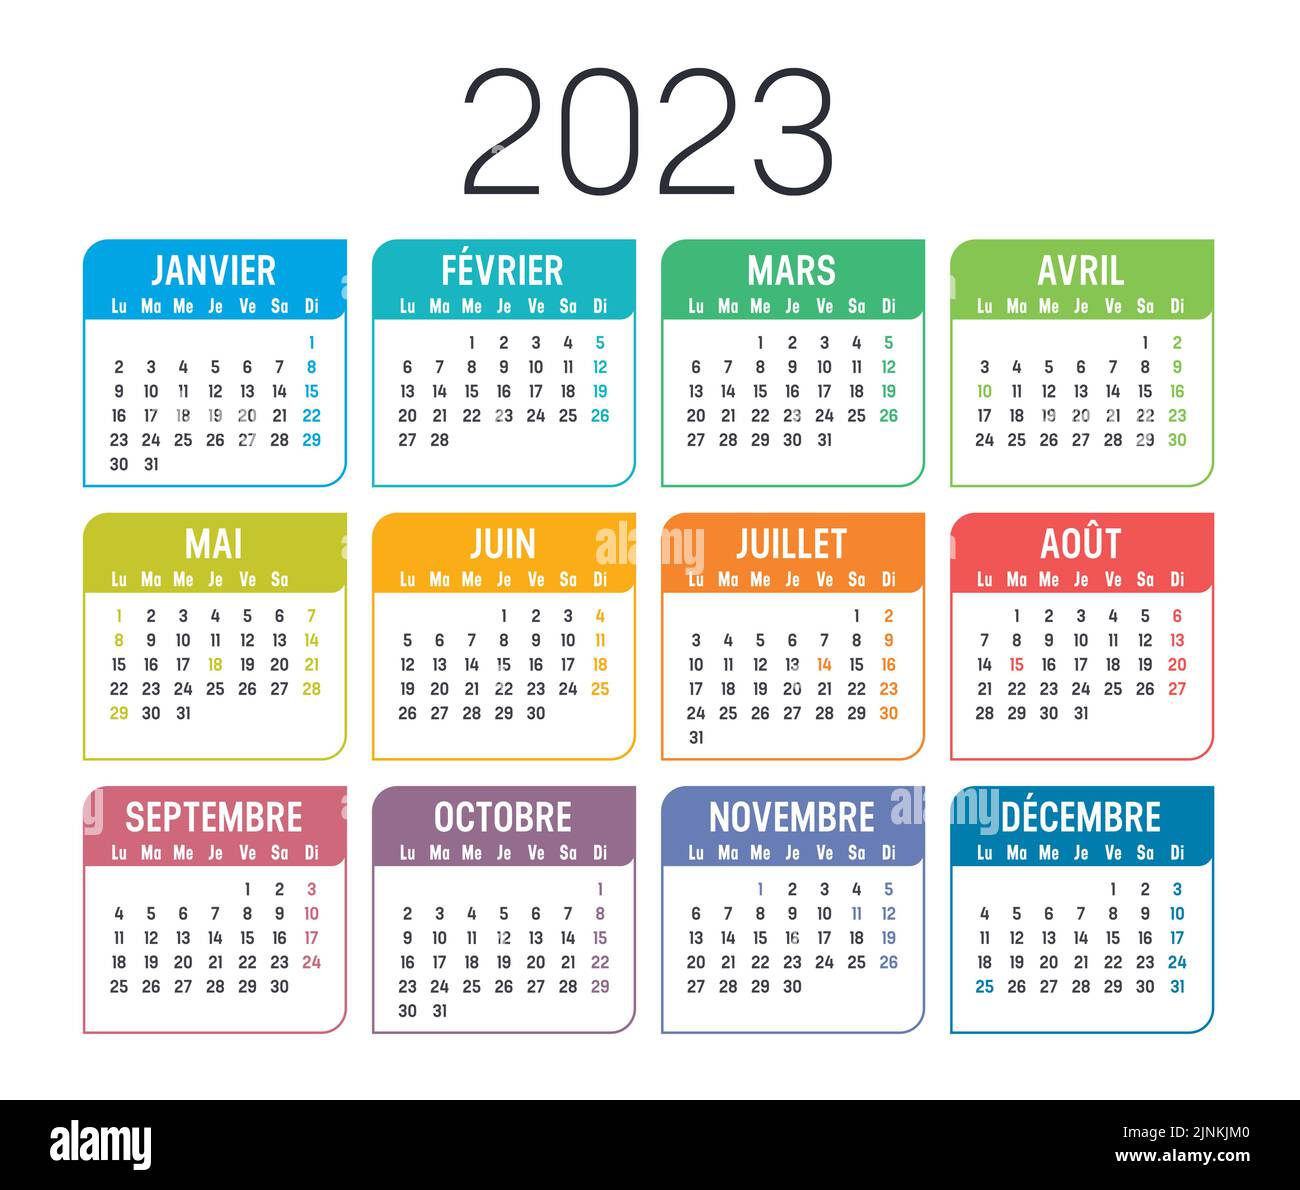 Calendario colorato dell'anno 2023, in lingua francese, isolato su sfondo bianco. Modello vettore. Illustrazione Vettoriale